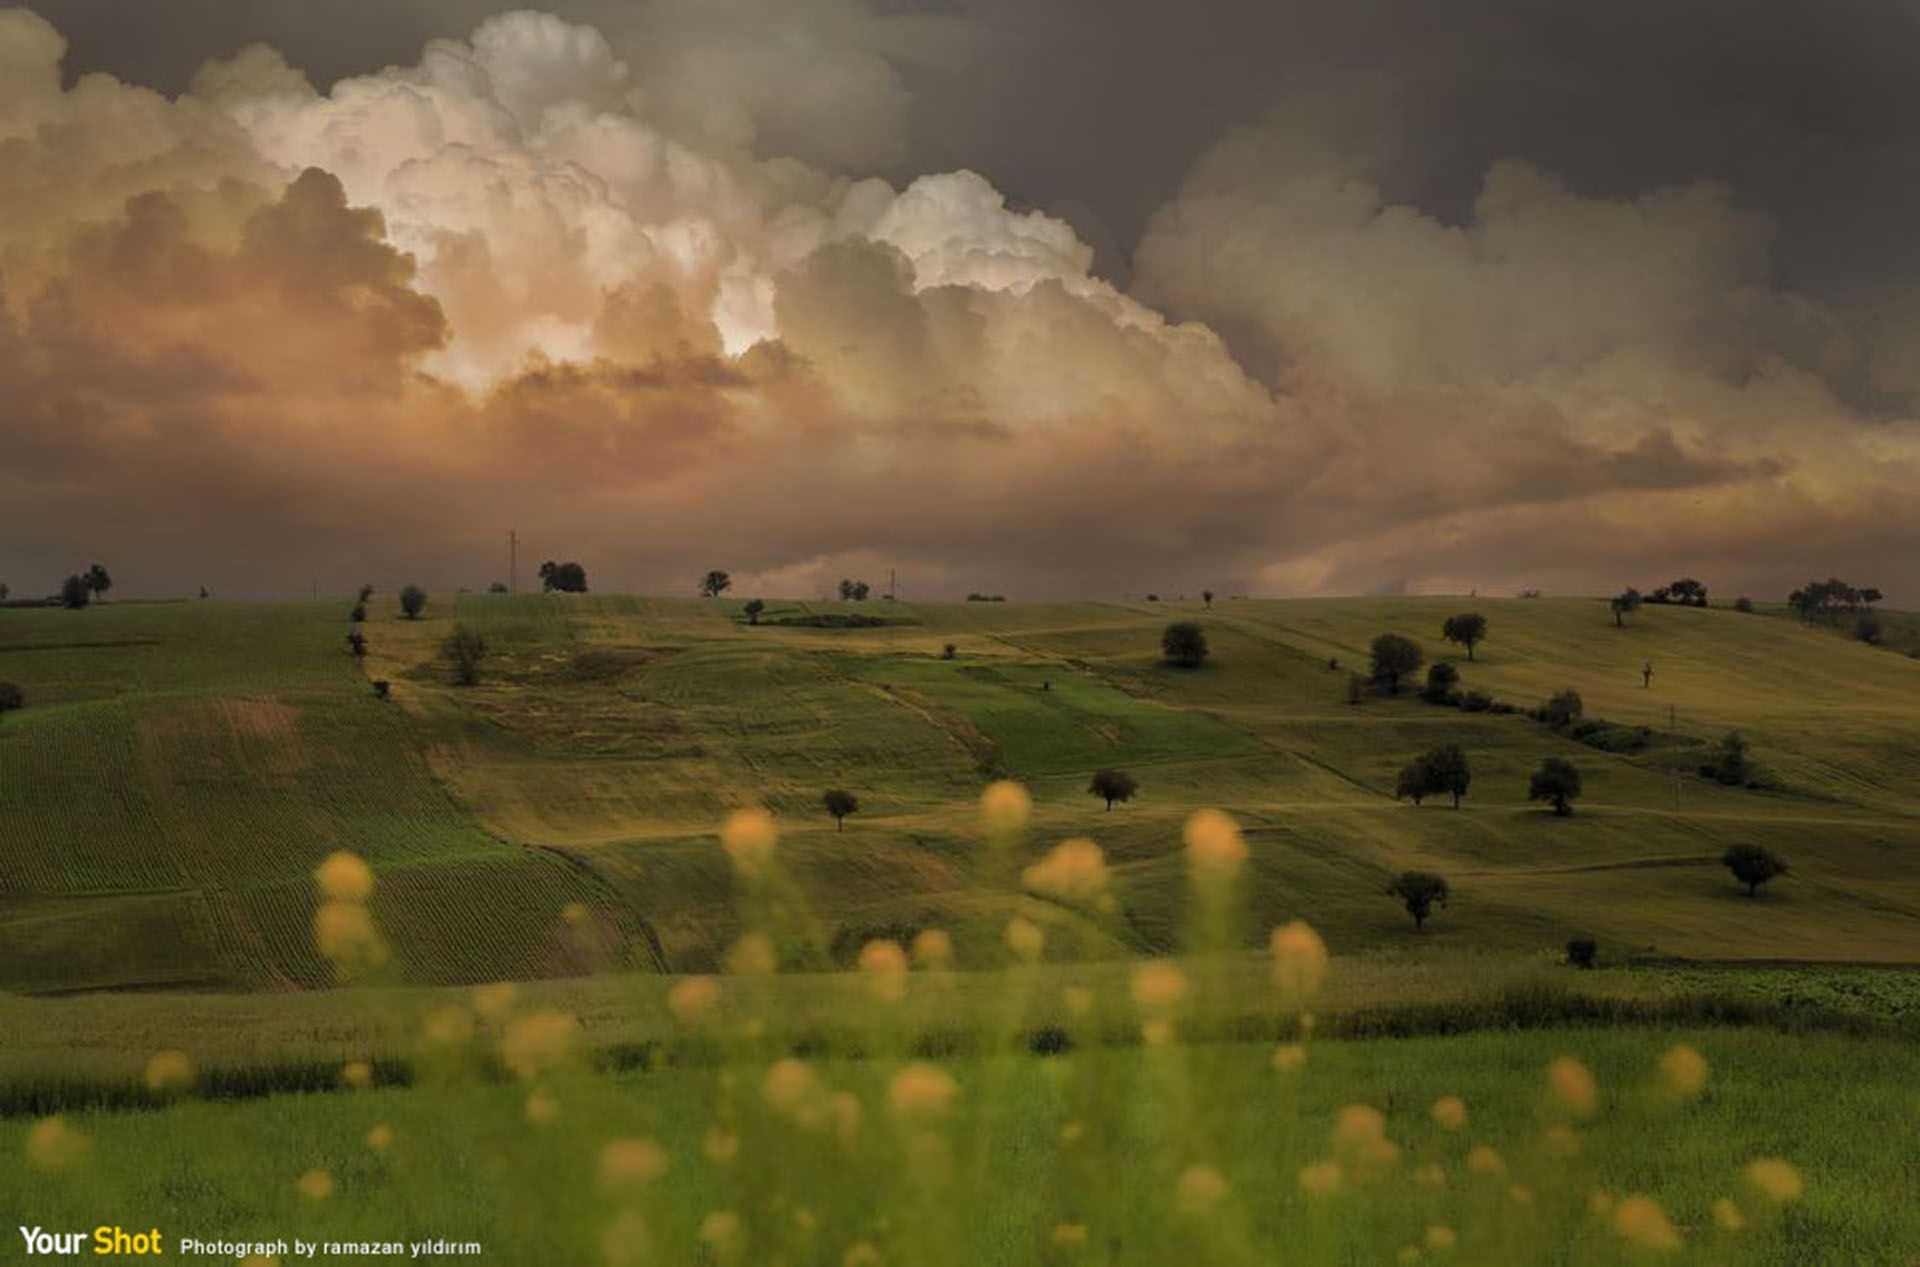 Photograph by ramazan yıldırım, National Geographic